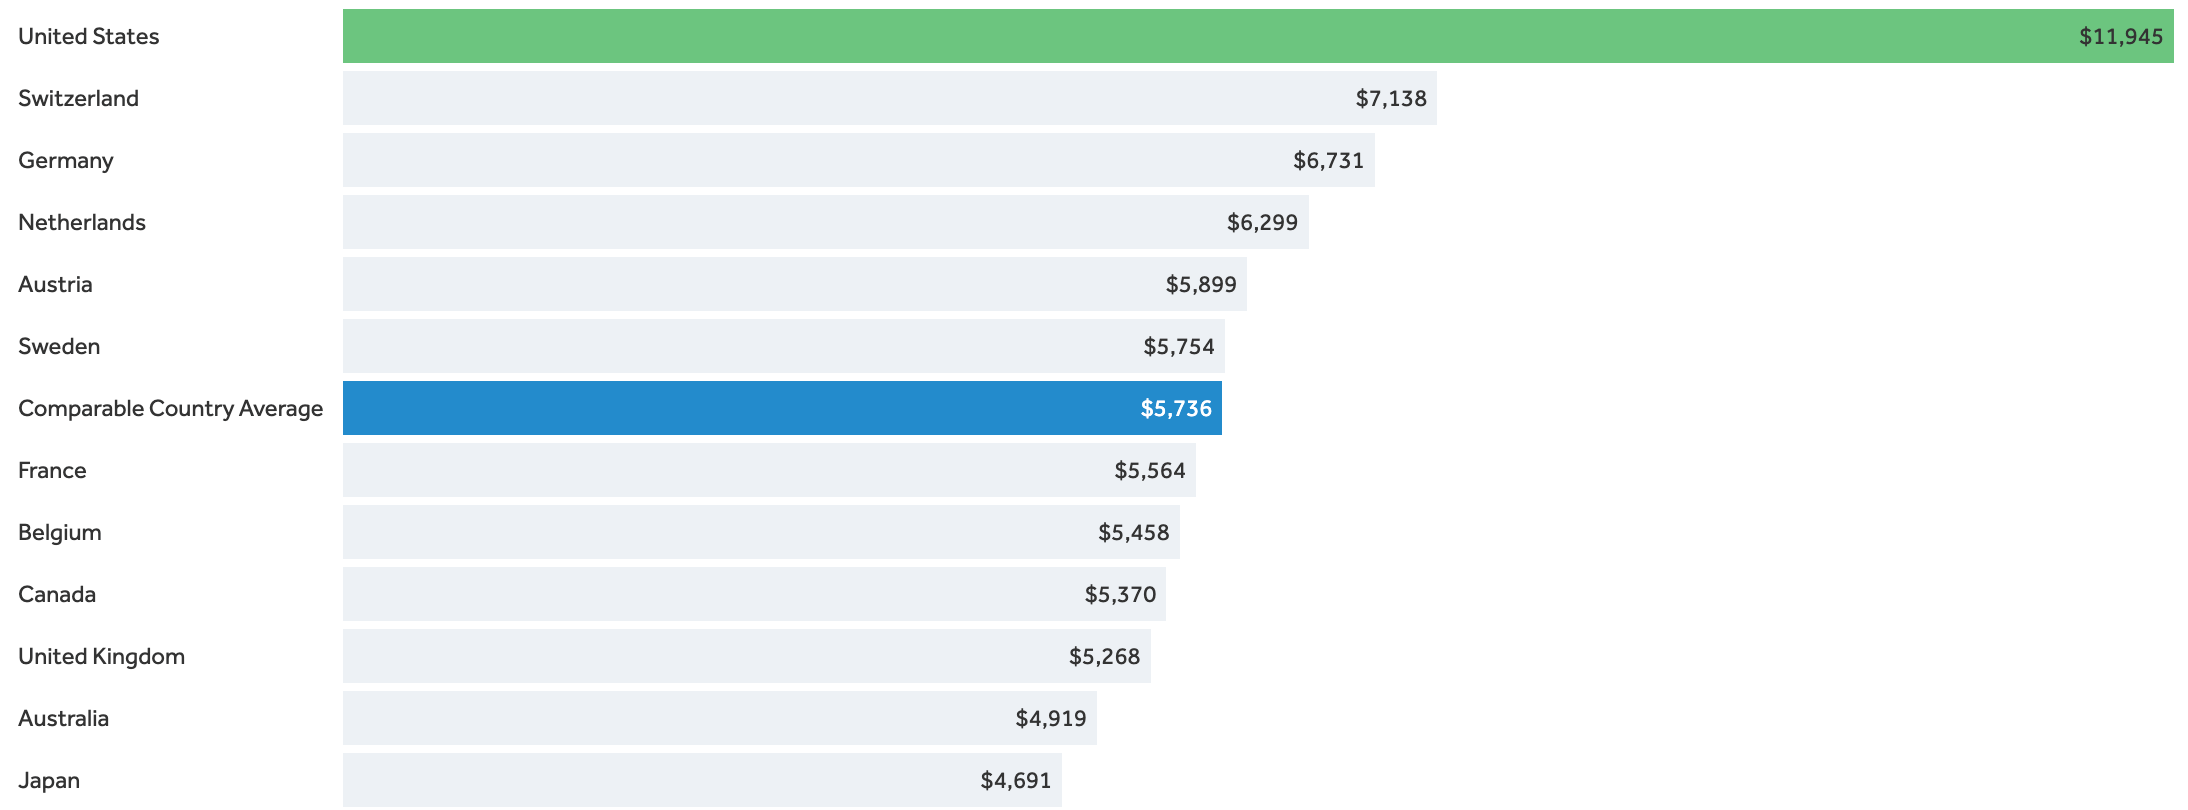 Страны с наибольшими годовыми издержками на здравоохранение на душу населения